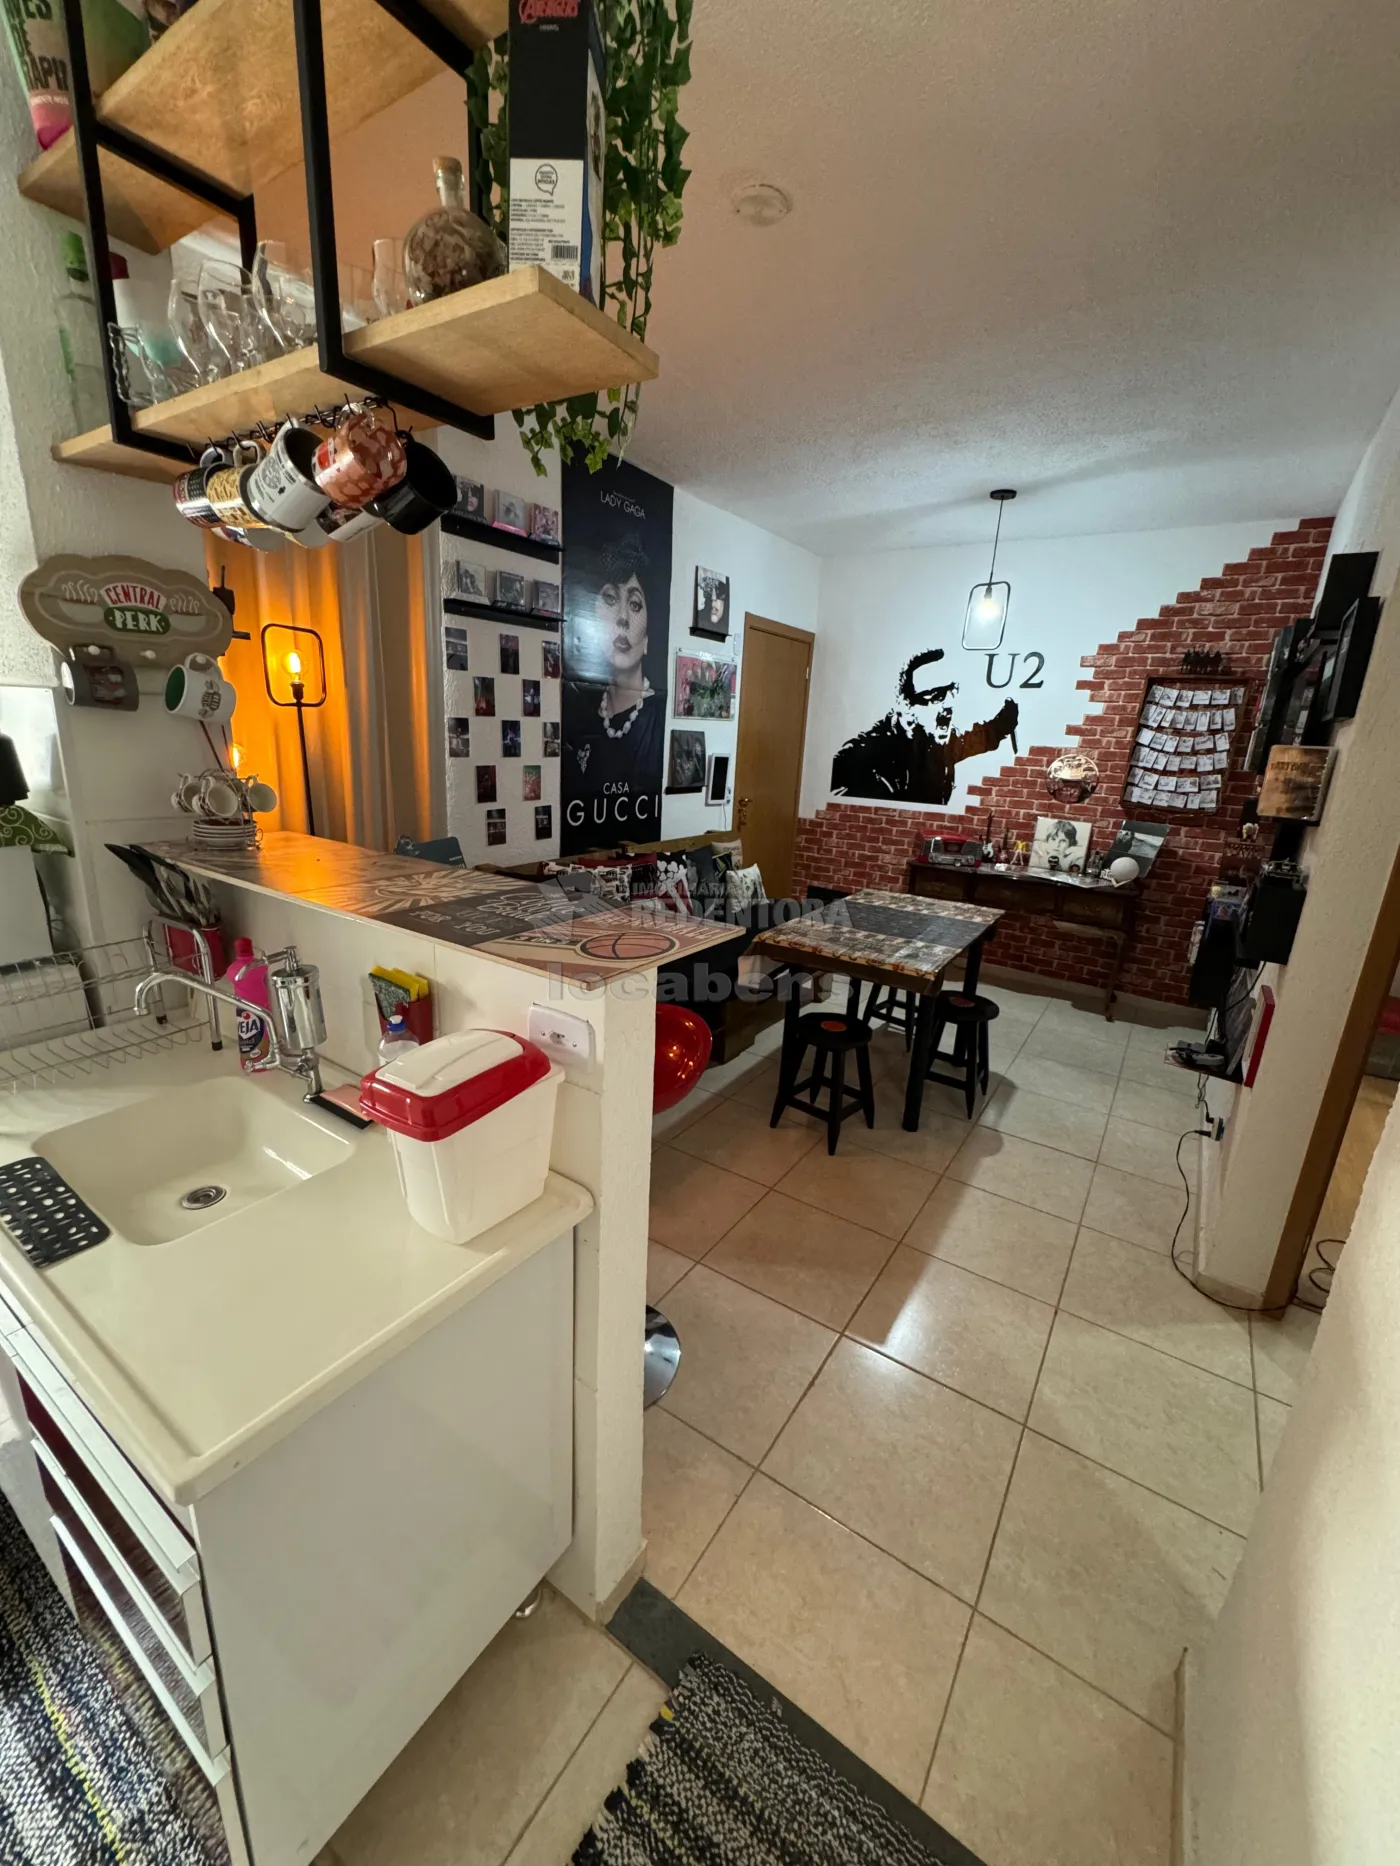 Comprar Apartamento / Padrão em São José do Rio Preto apenas R$ 147.000,00 - Foto 3